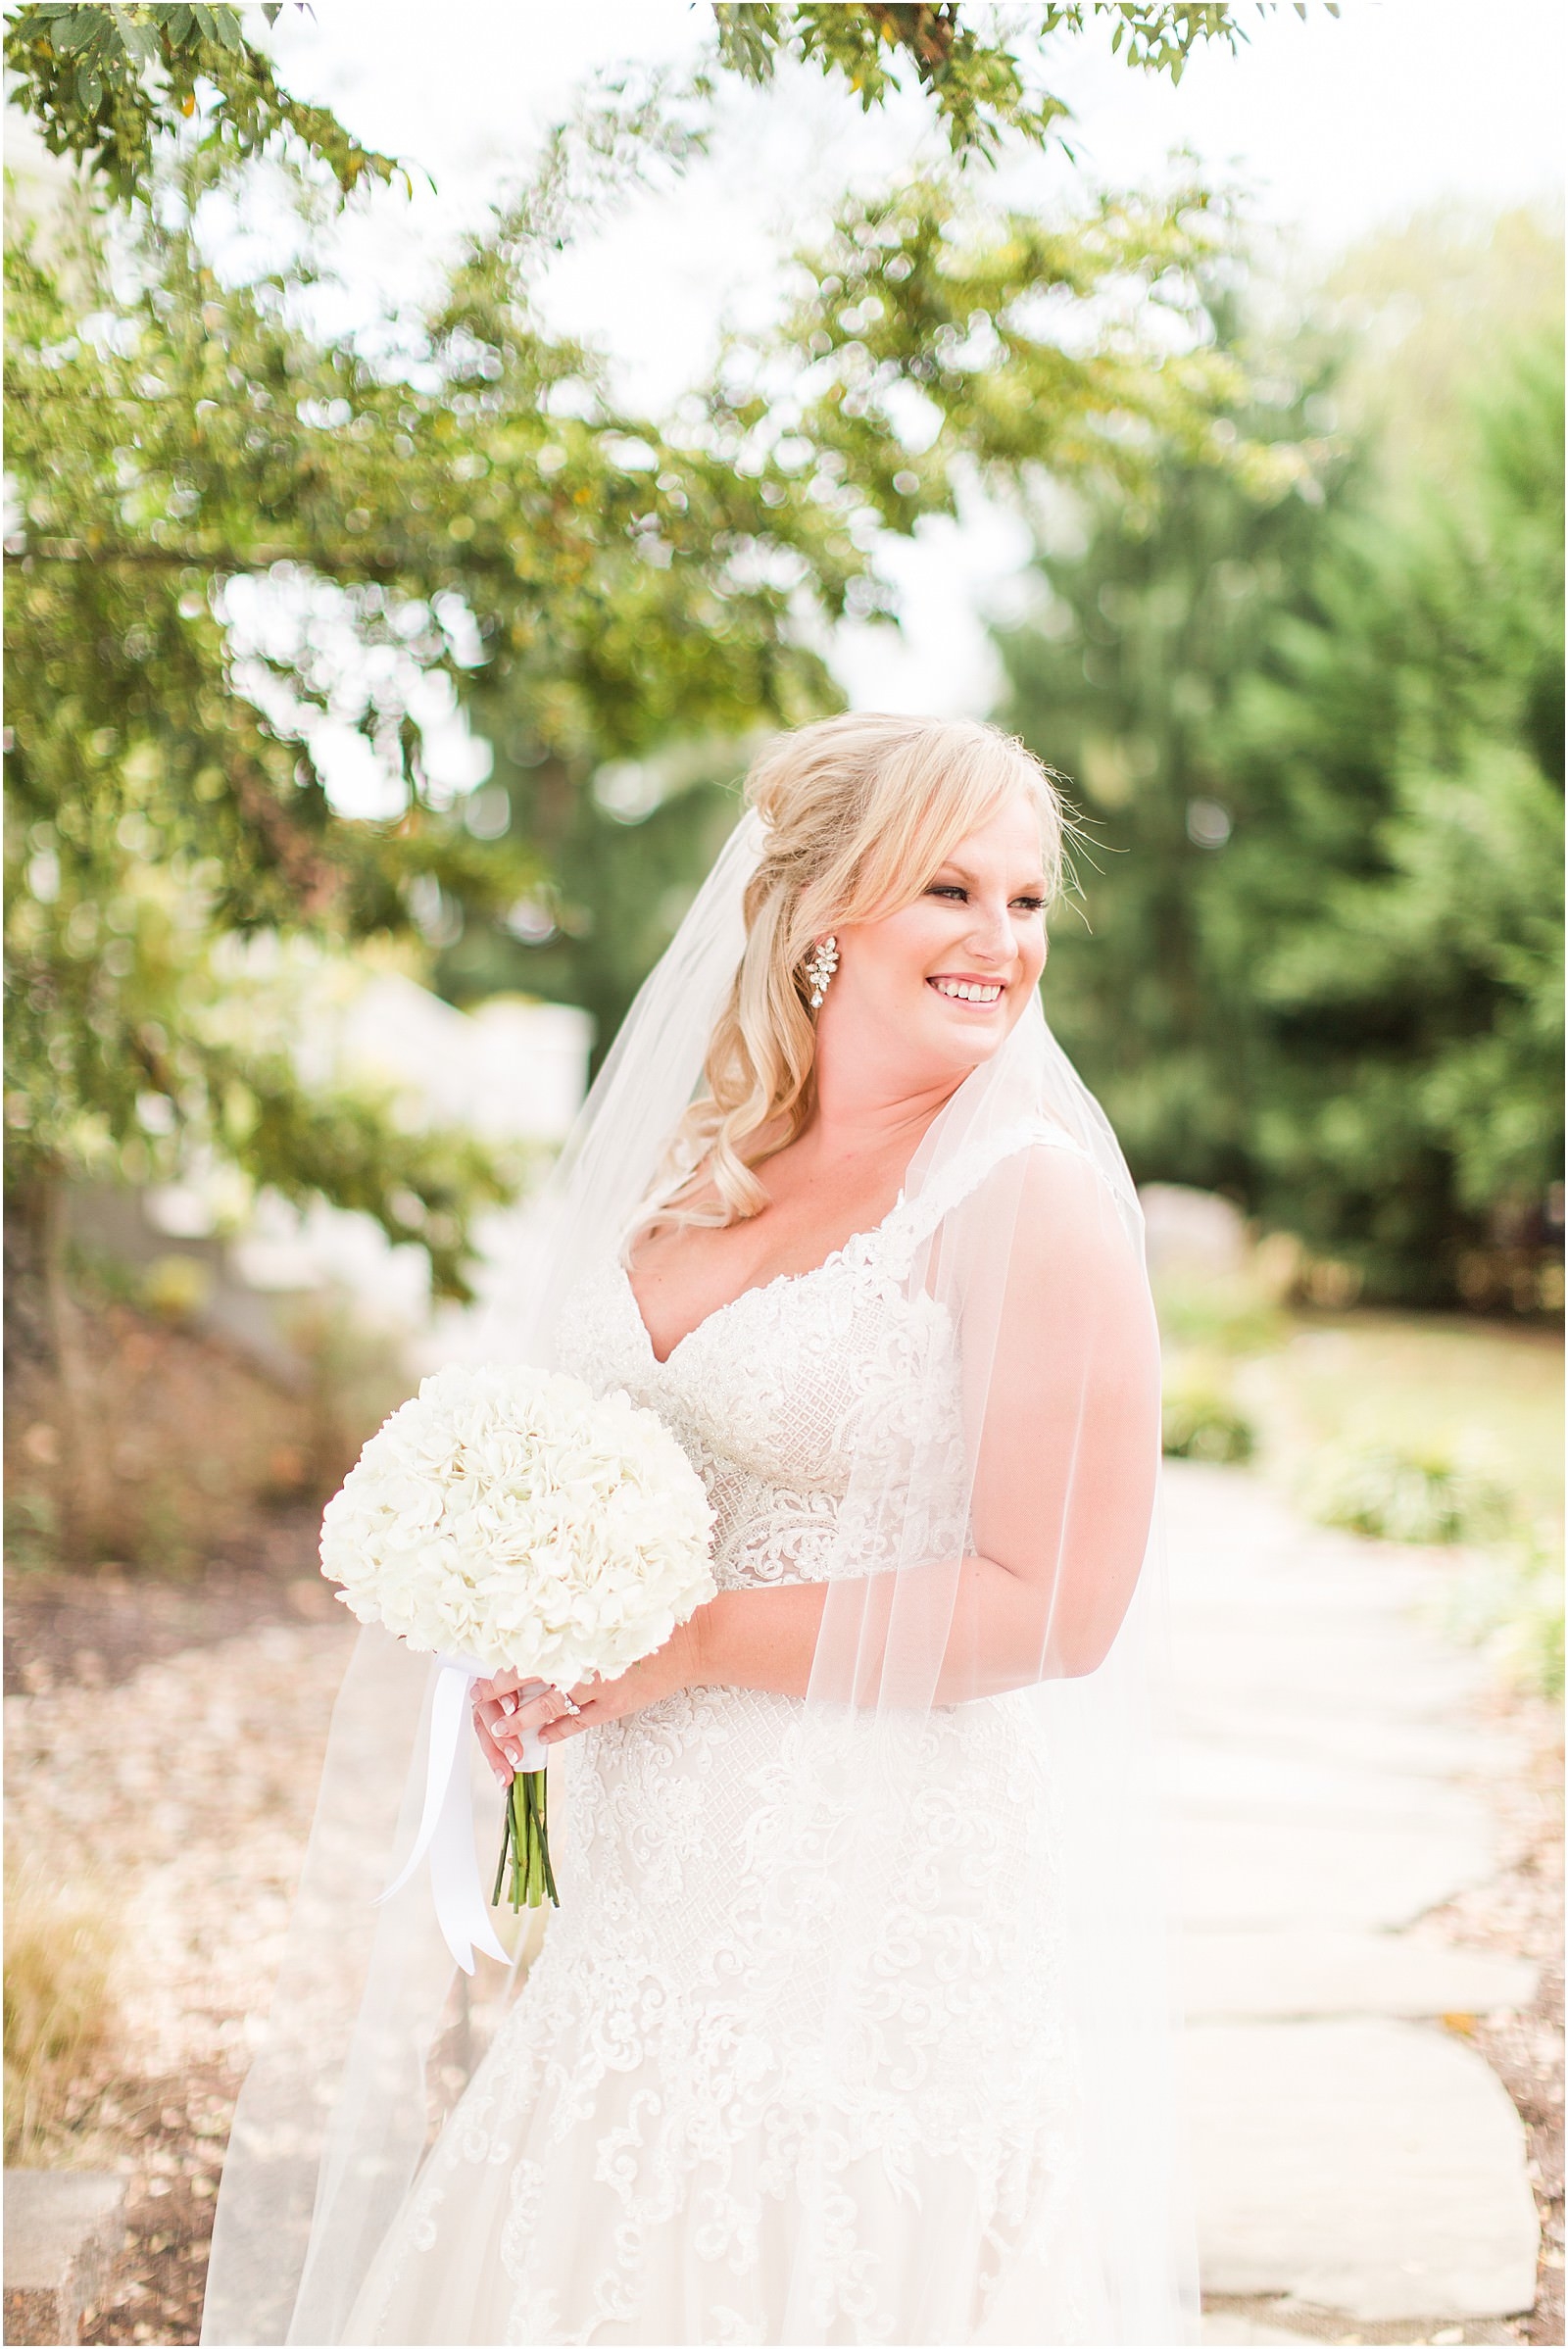 A Stunning Wedding at Walker's Bluff | Bret and Brandie | Evansville ...